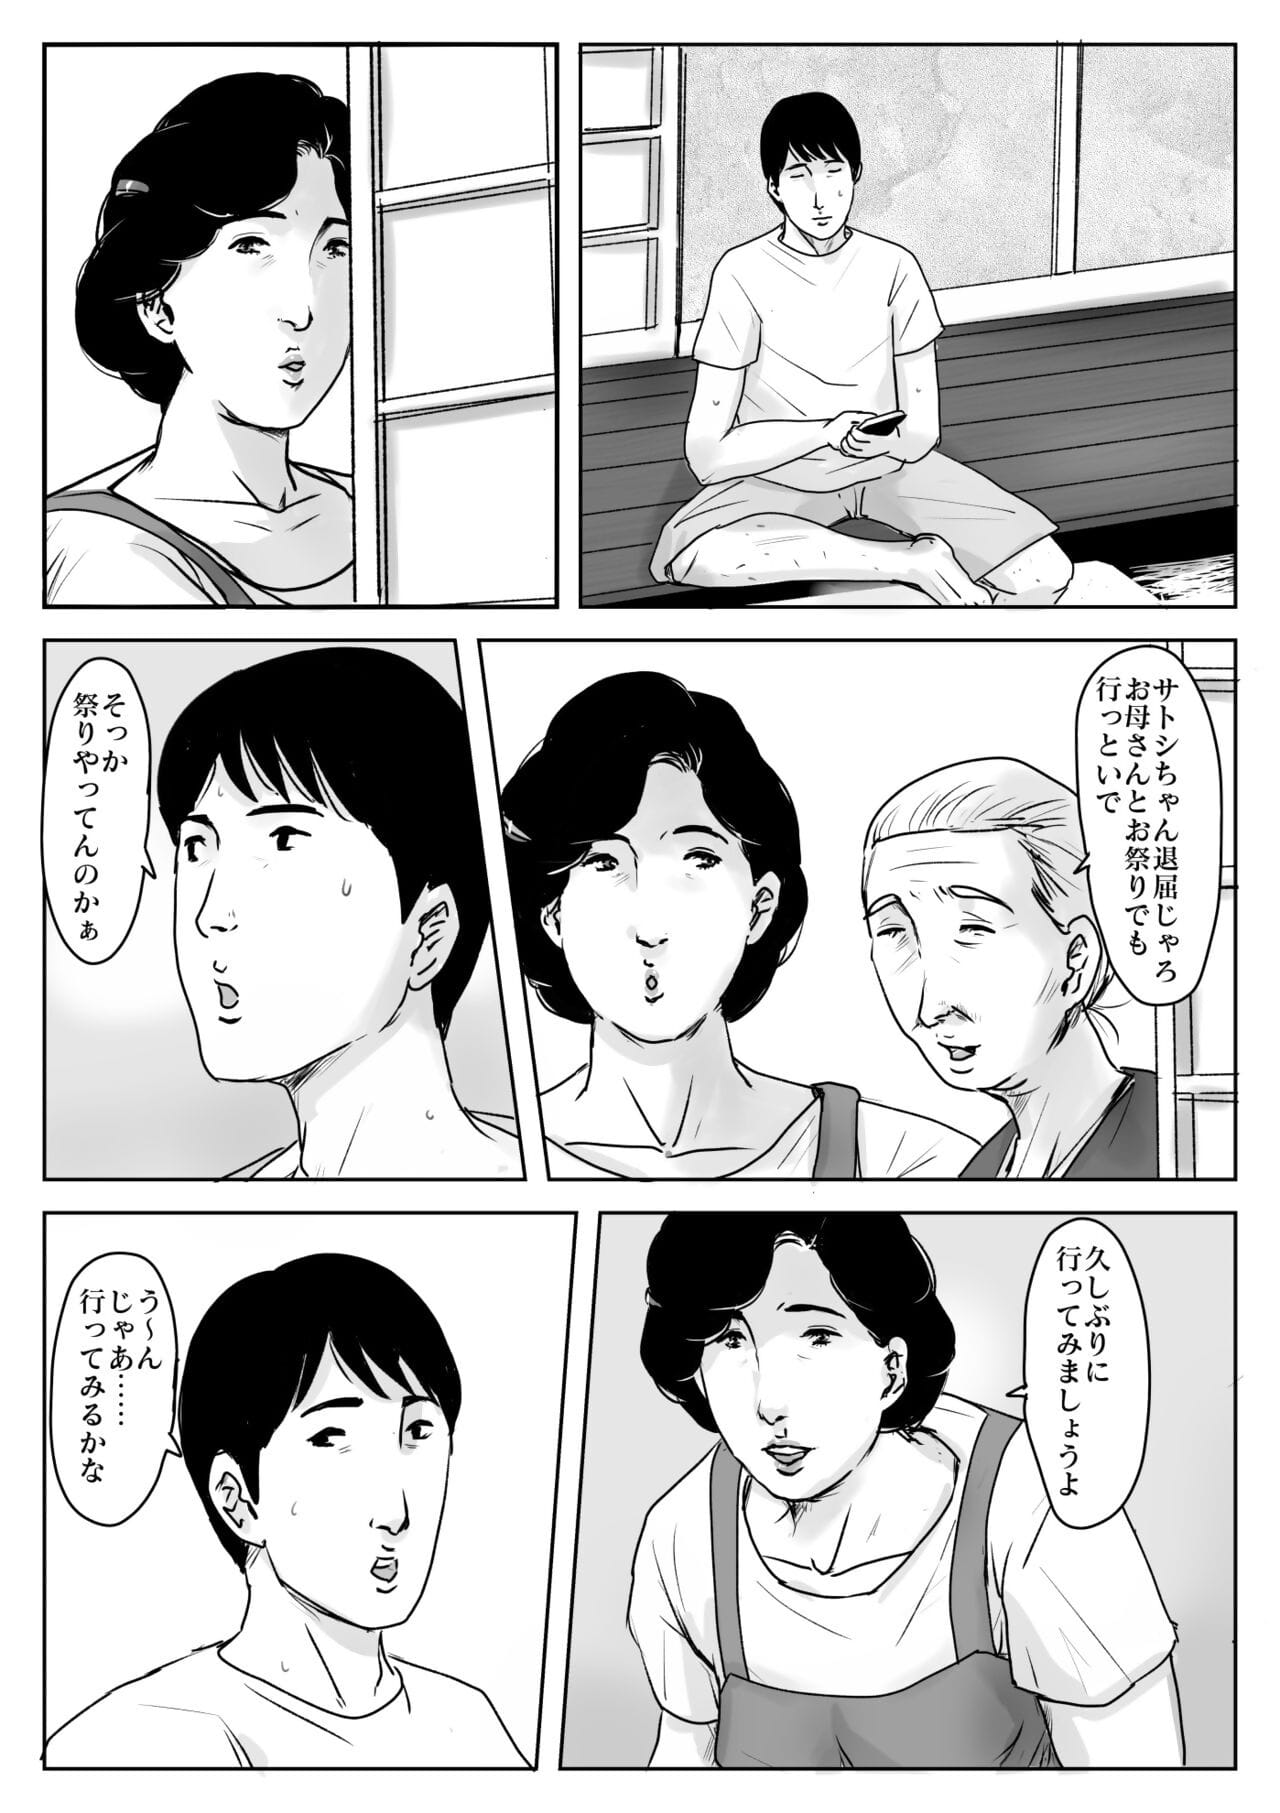 ฮ่าฮ่า ดี koishite #3 omoide ไม่ natsu page 1